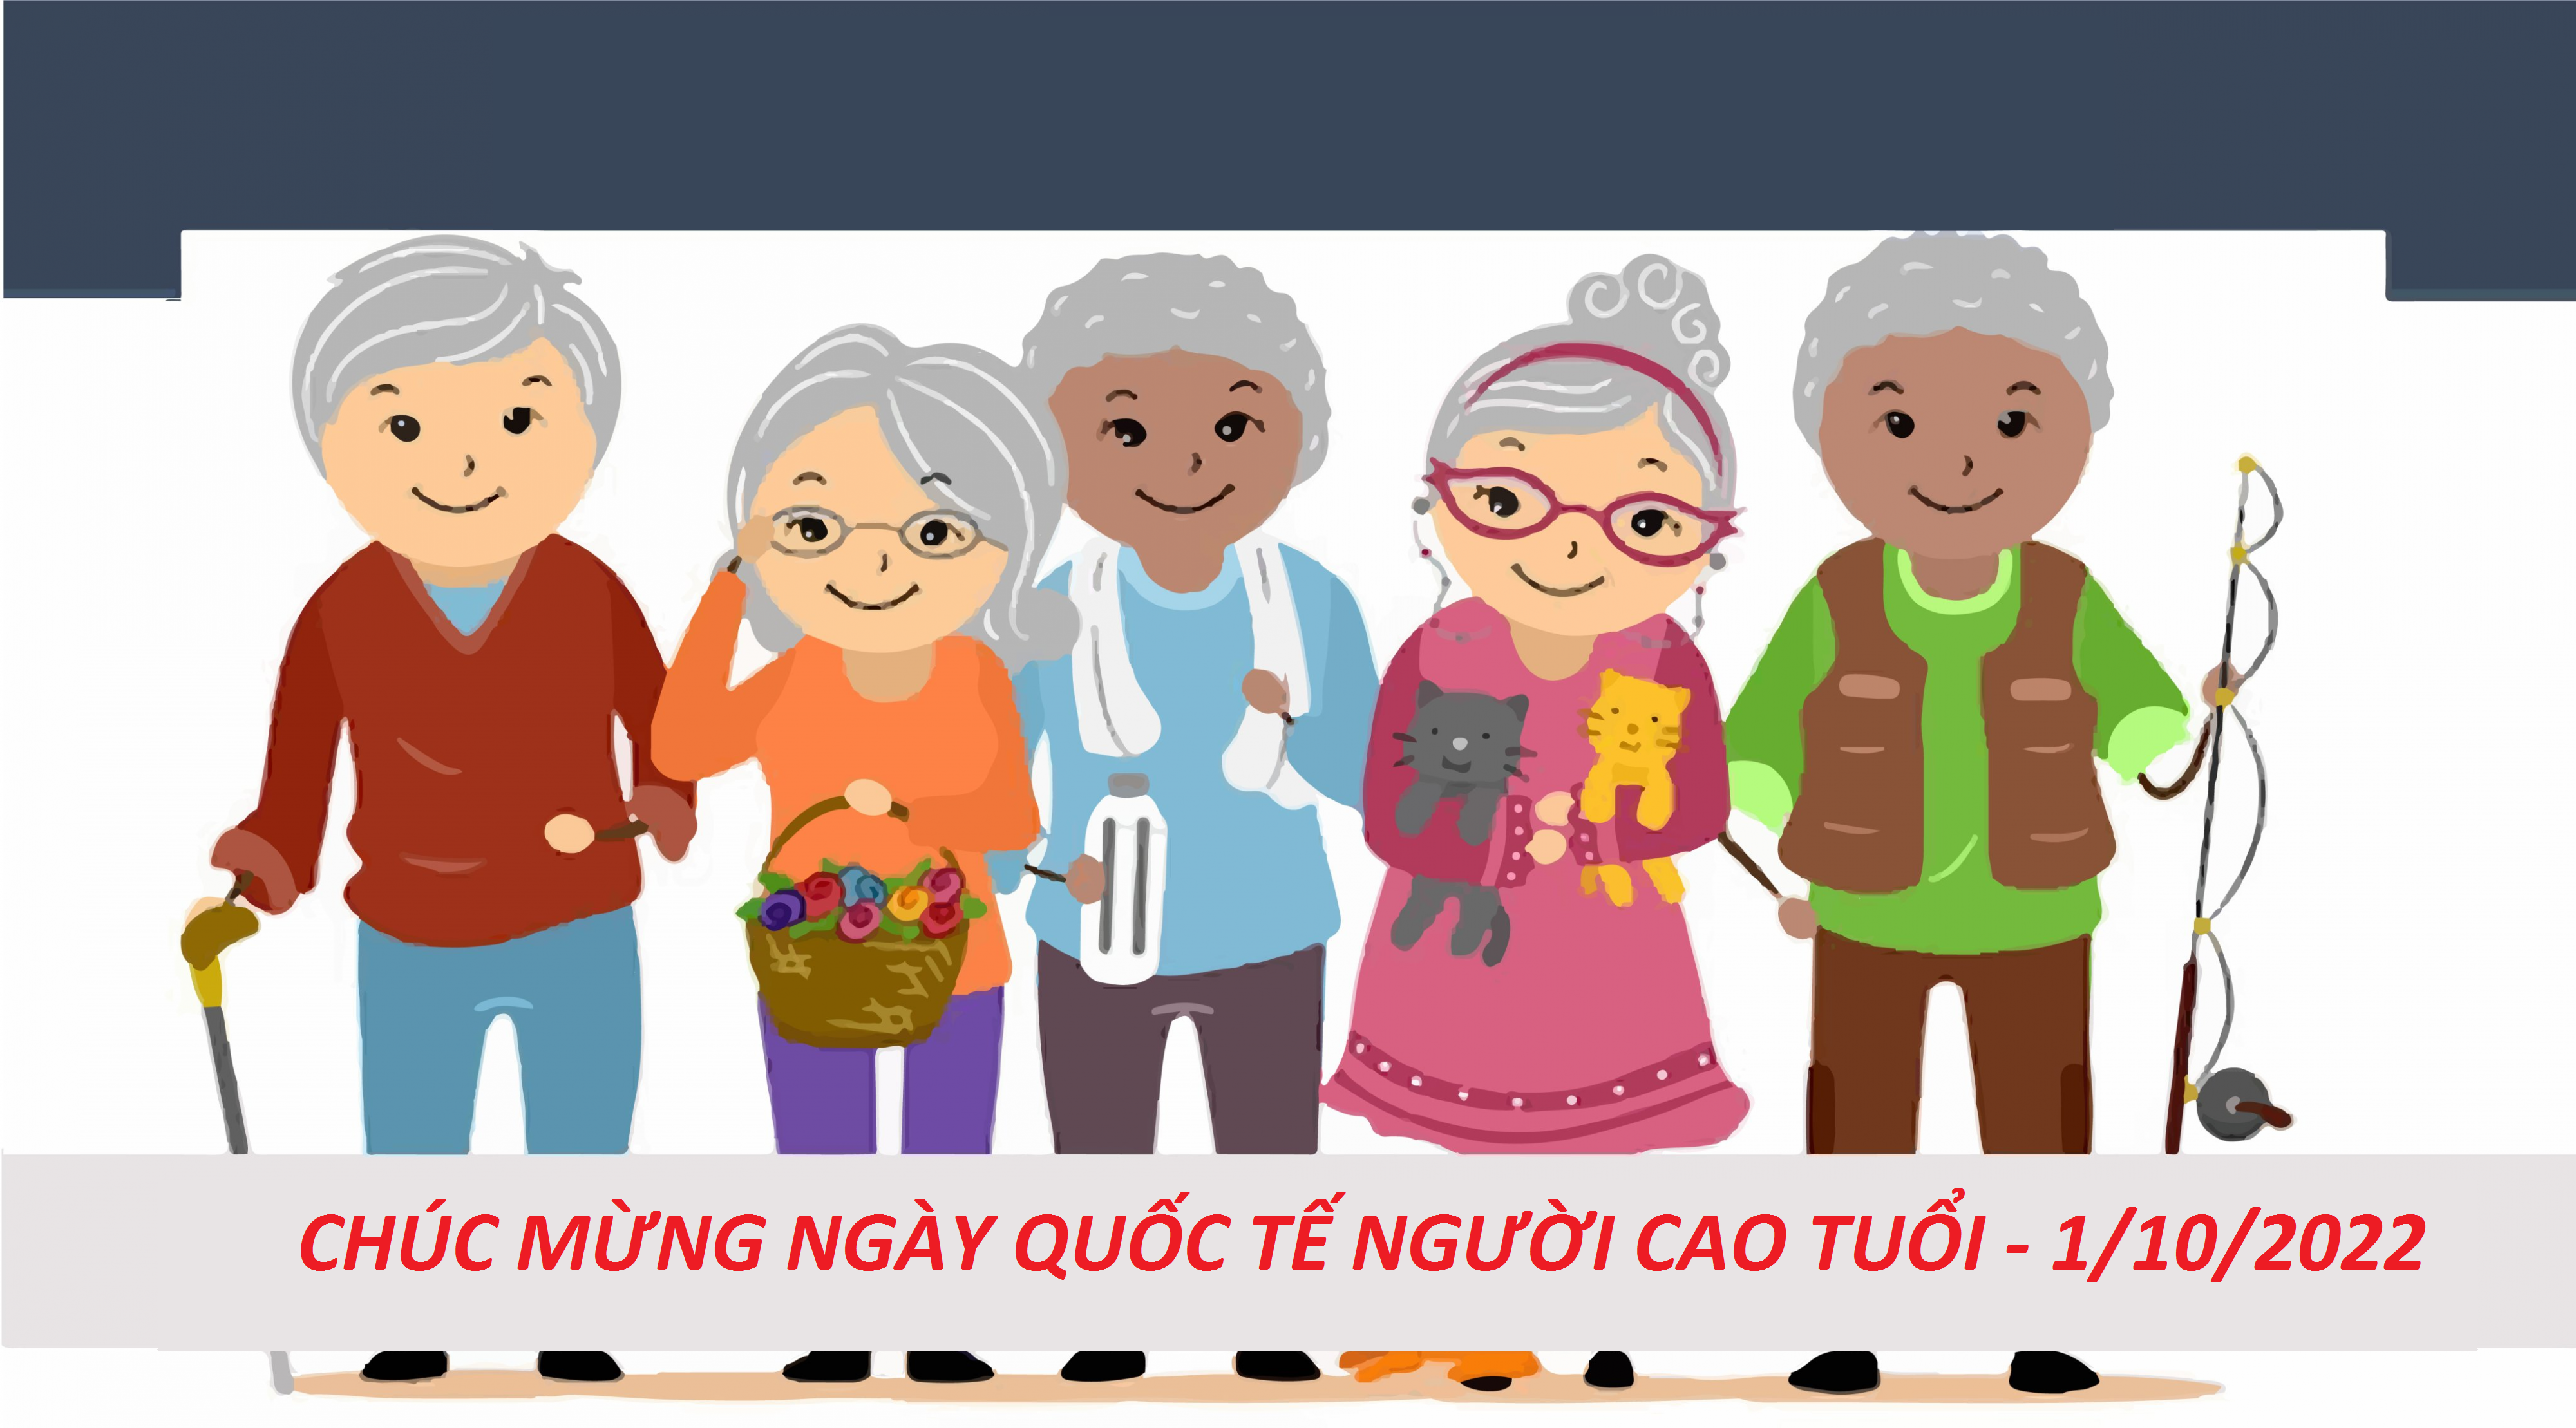 Ngày Quốc tế Người cao tuổi là dịp để chúng ta gửi đến những người cao tuổi những lời chúc ý nghĩa. Hãy cùng xem những hình ảnh đẹp và những lời chúc tới những người cao tuổi nhé!